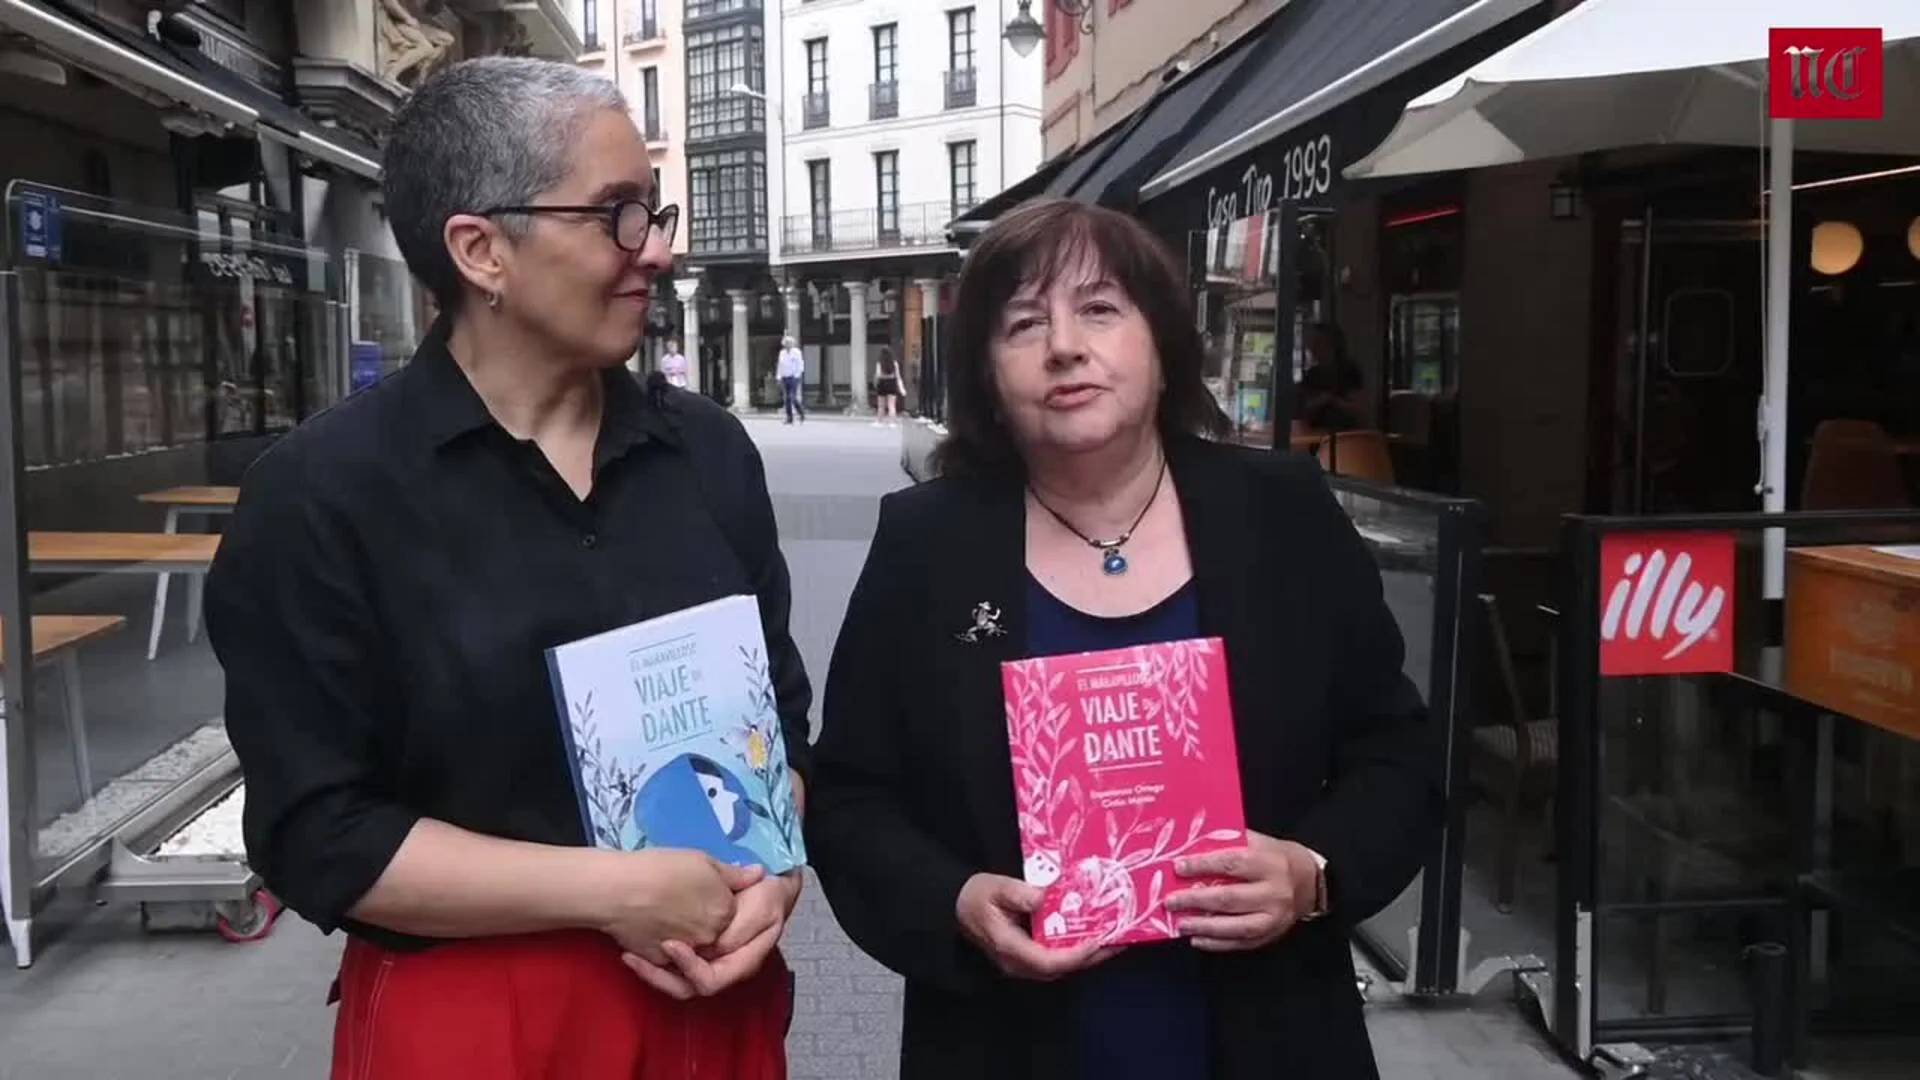 Esperanza Ortega y Cintia Martín presentan 'El maravilloso viaje de Dante'